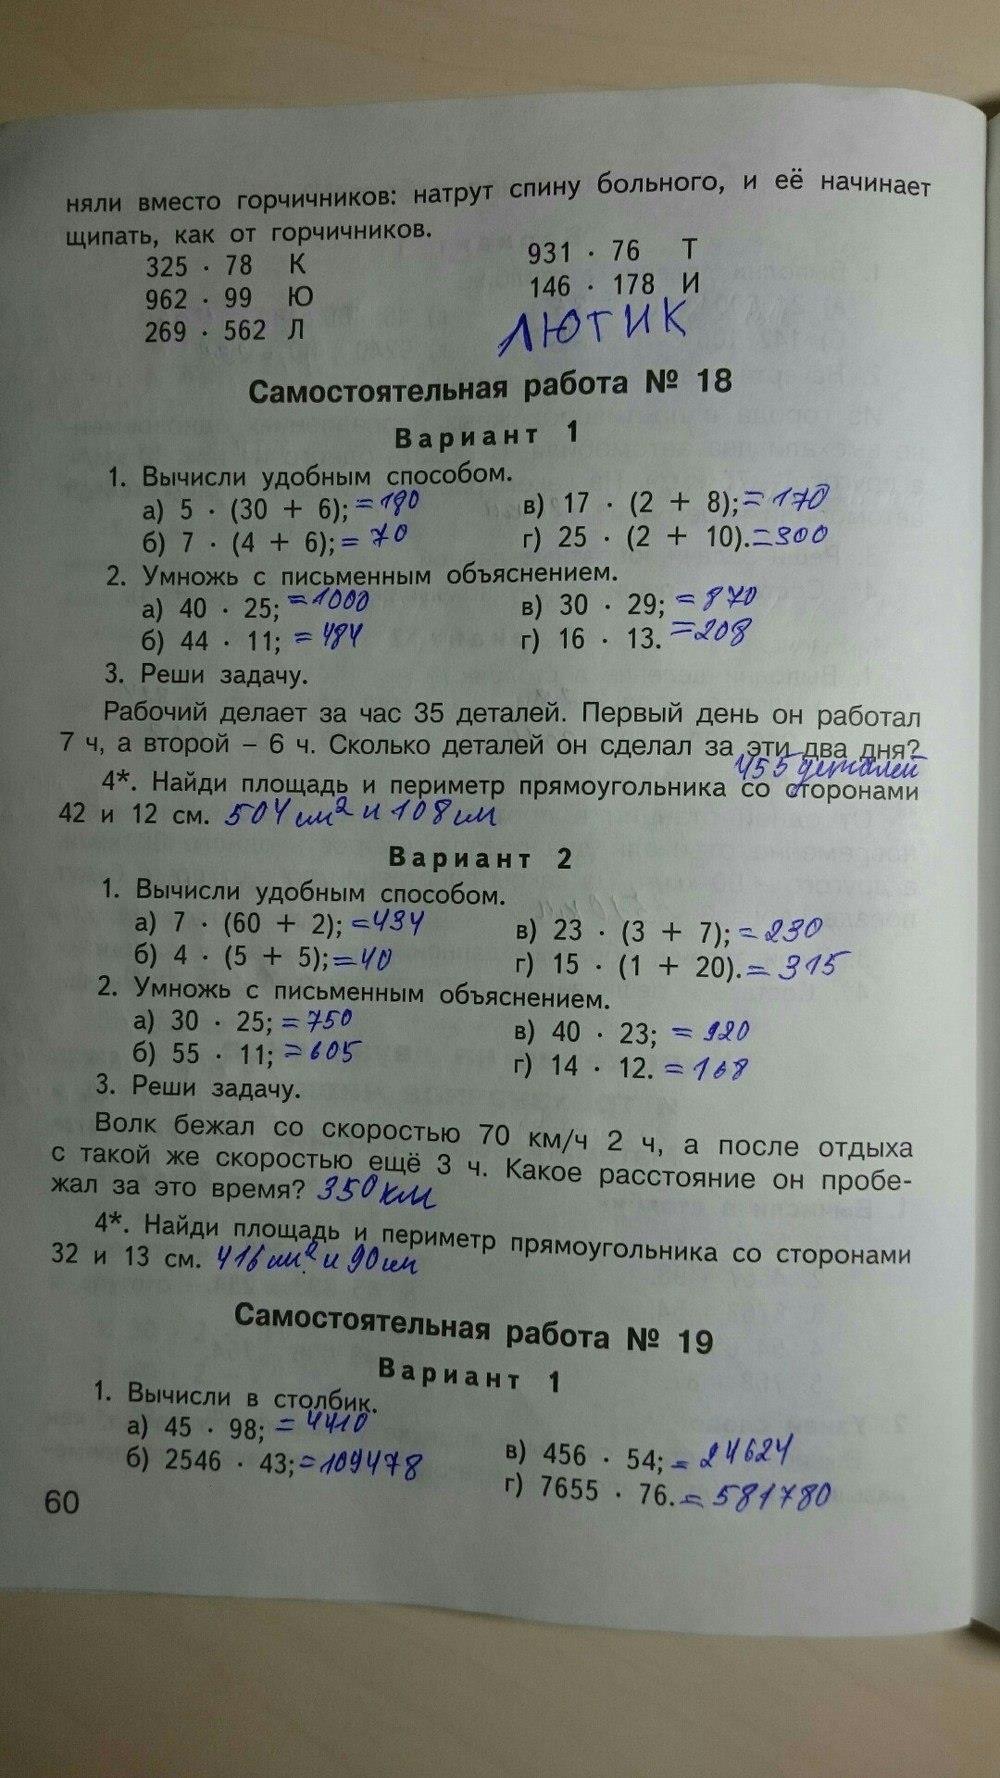 гдз 4 класс контрольно-измерительные материалы страница 60 математика Ситникова